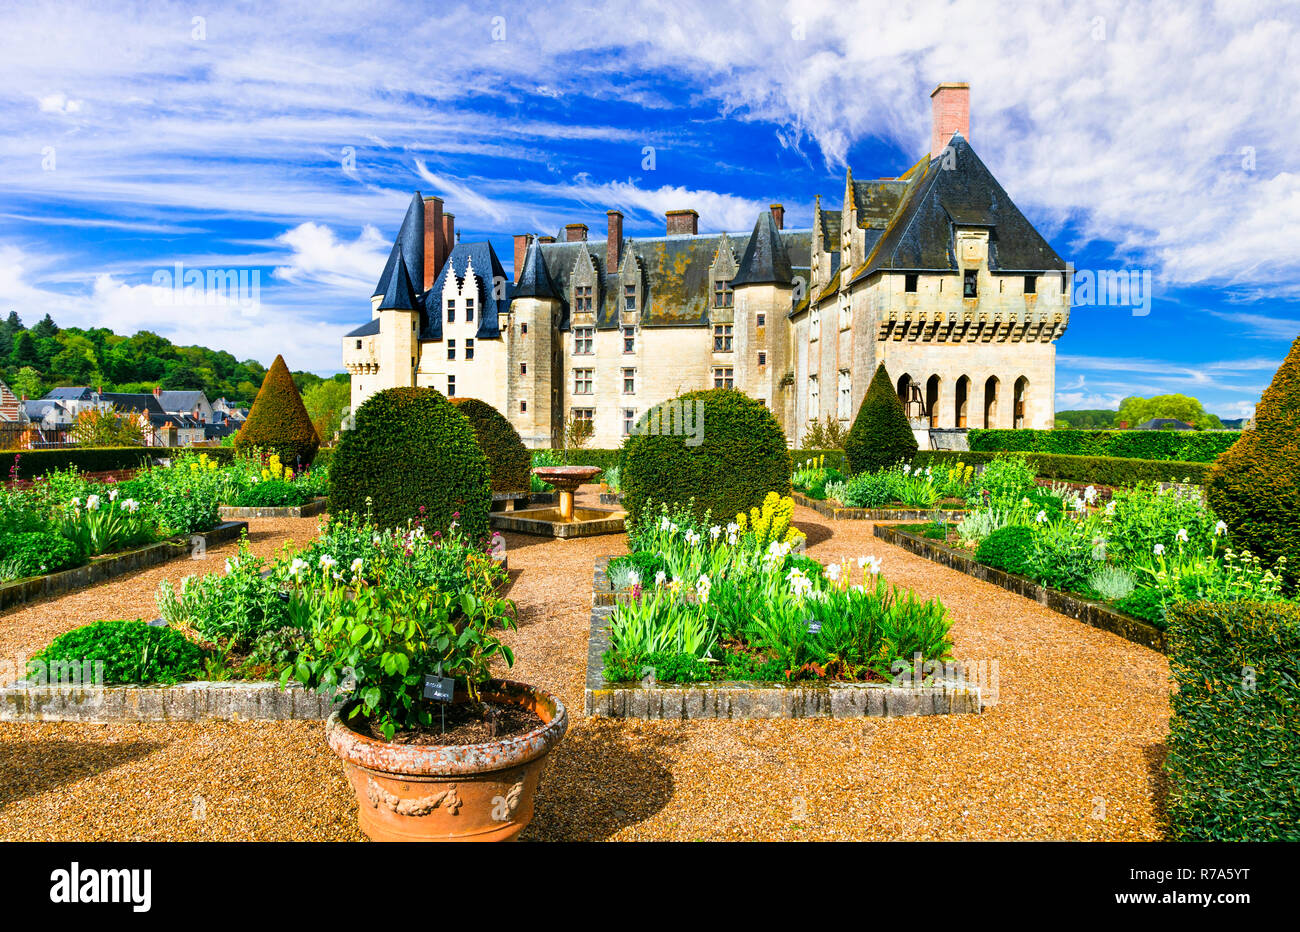 Beau château médiéval de Langeais,Val de Loire,France. Banque D'Images